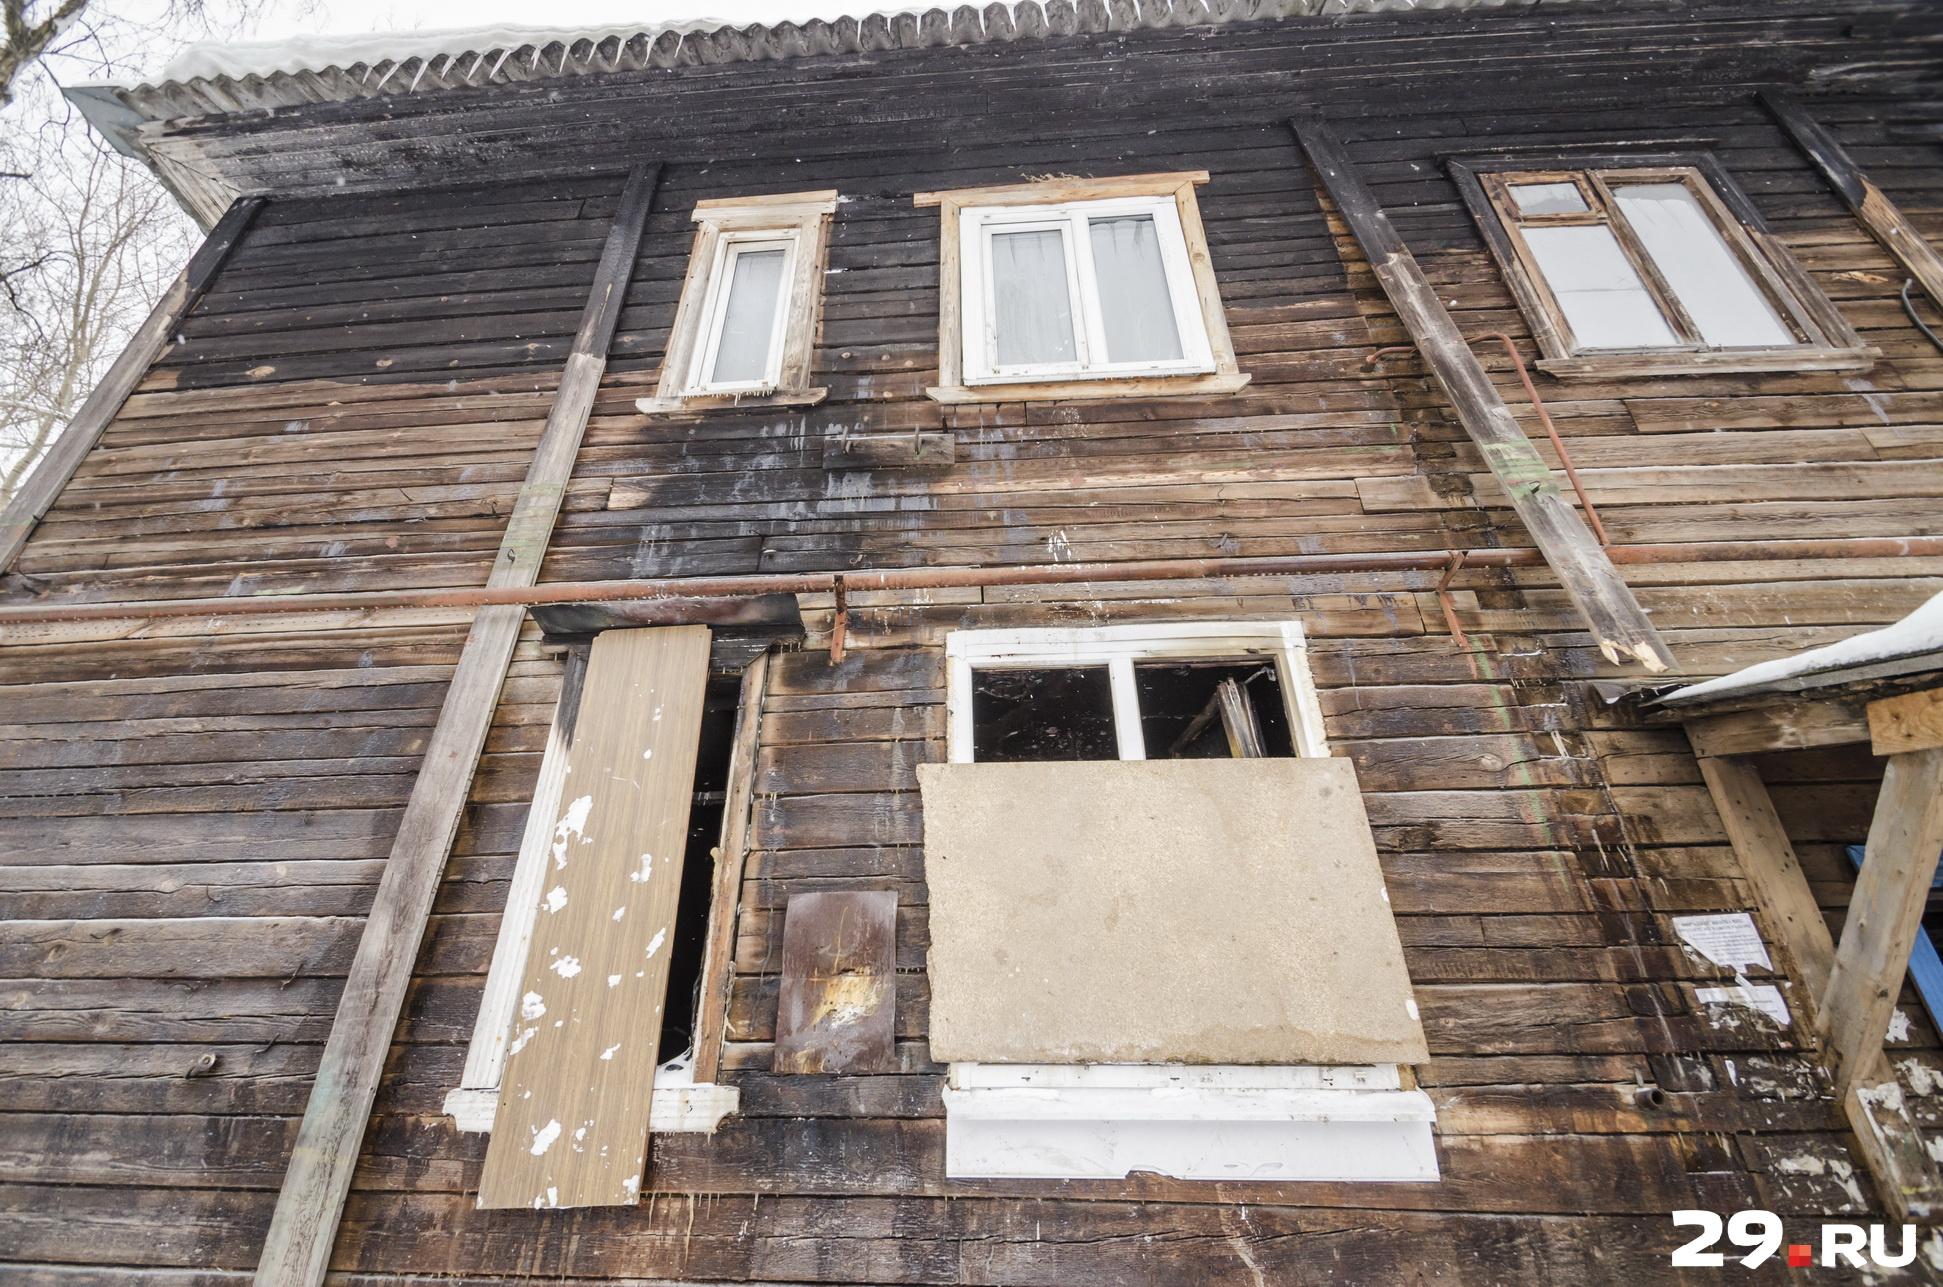 Соседи из дома №15 сказали Валентине Егоровне, что если дочки не заколотят окна в сгоревшей квартире, они подадут на них в суд. Заколотили